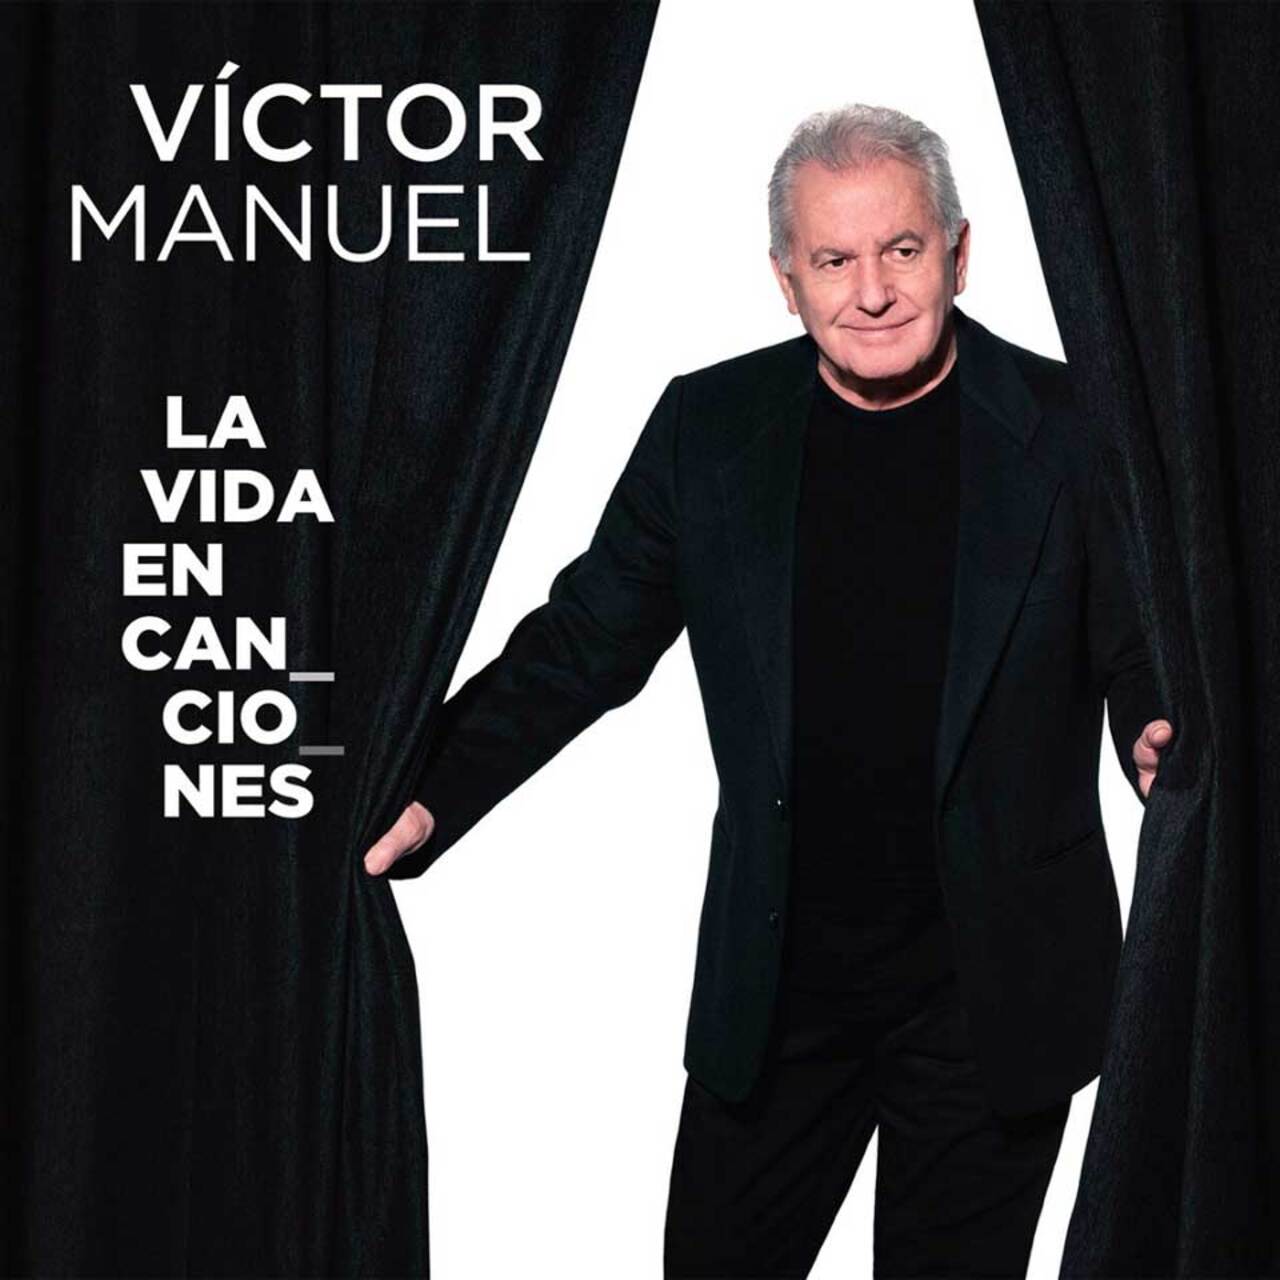 Víctor Manuel Tour 75 aniversario. "La vida en canciones. El escenario lo cura todo"